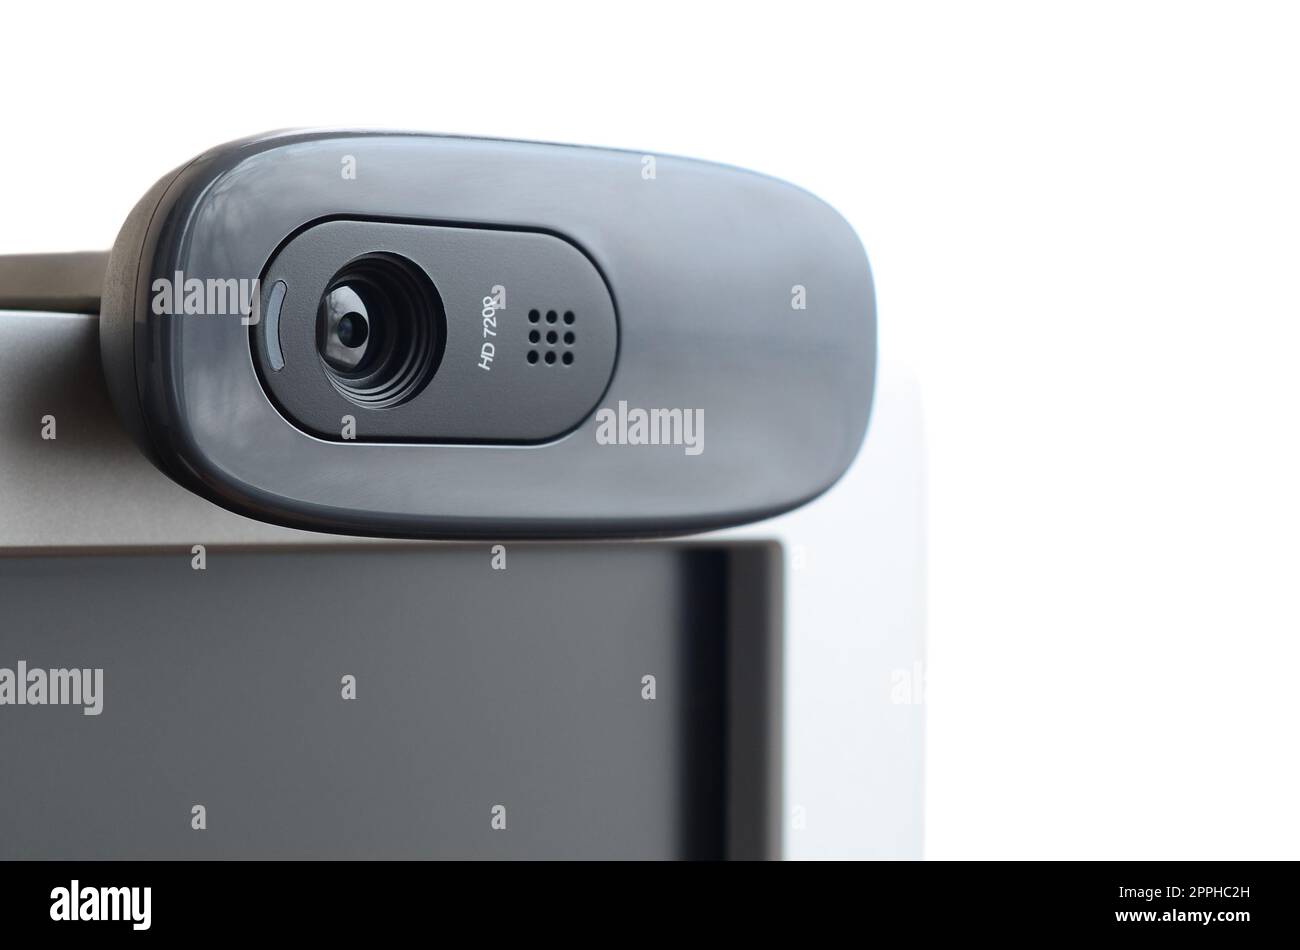 Une webcam moderne est installée sur le boîtier d'un moniteur à écran plat. Périphérique de communication vidéo et d'enregistrement vidéo de haute qualité Banque D'Images